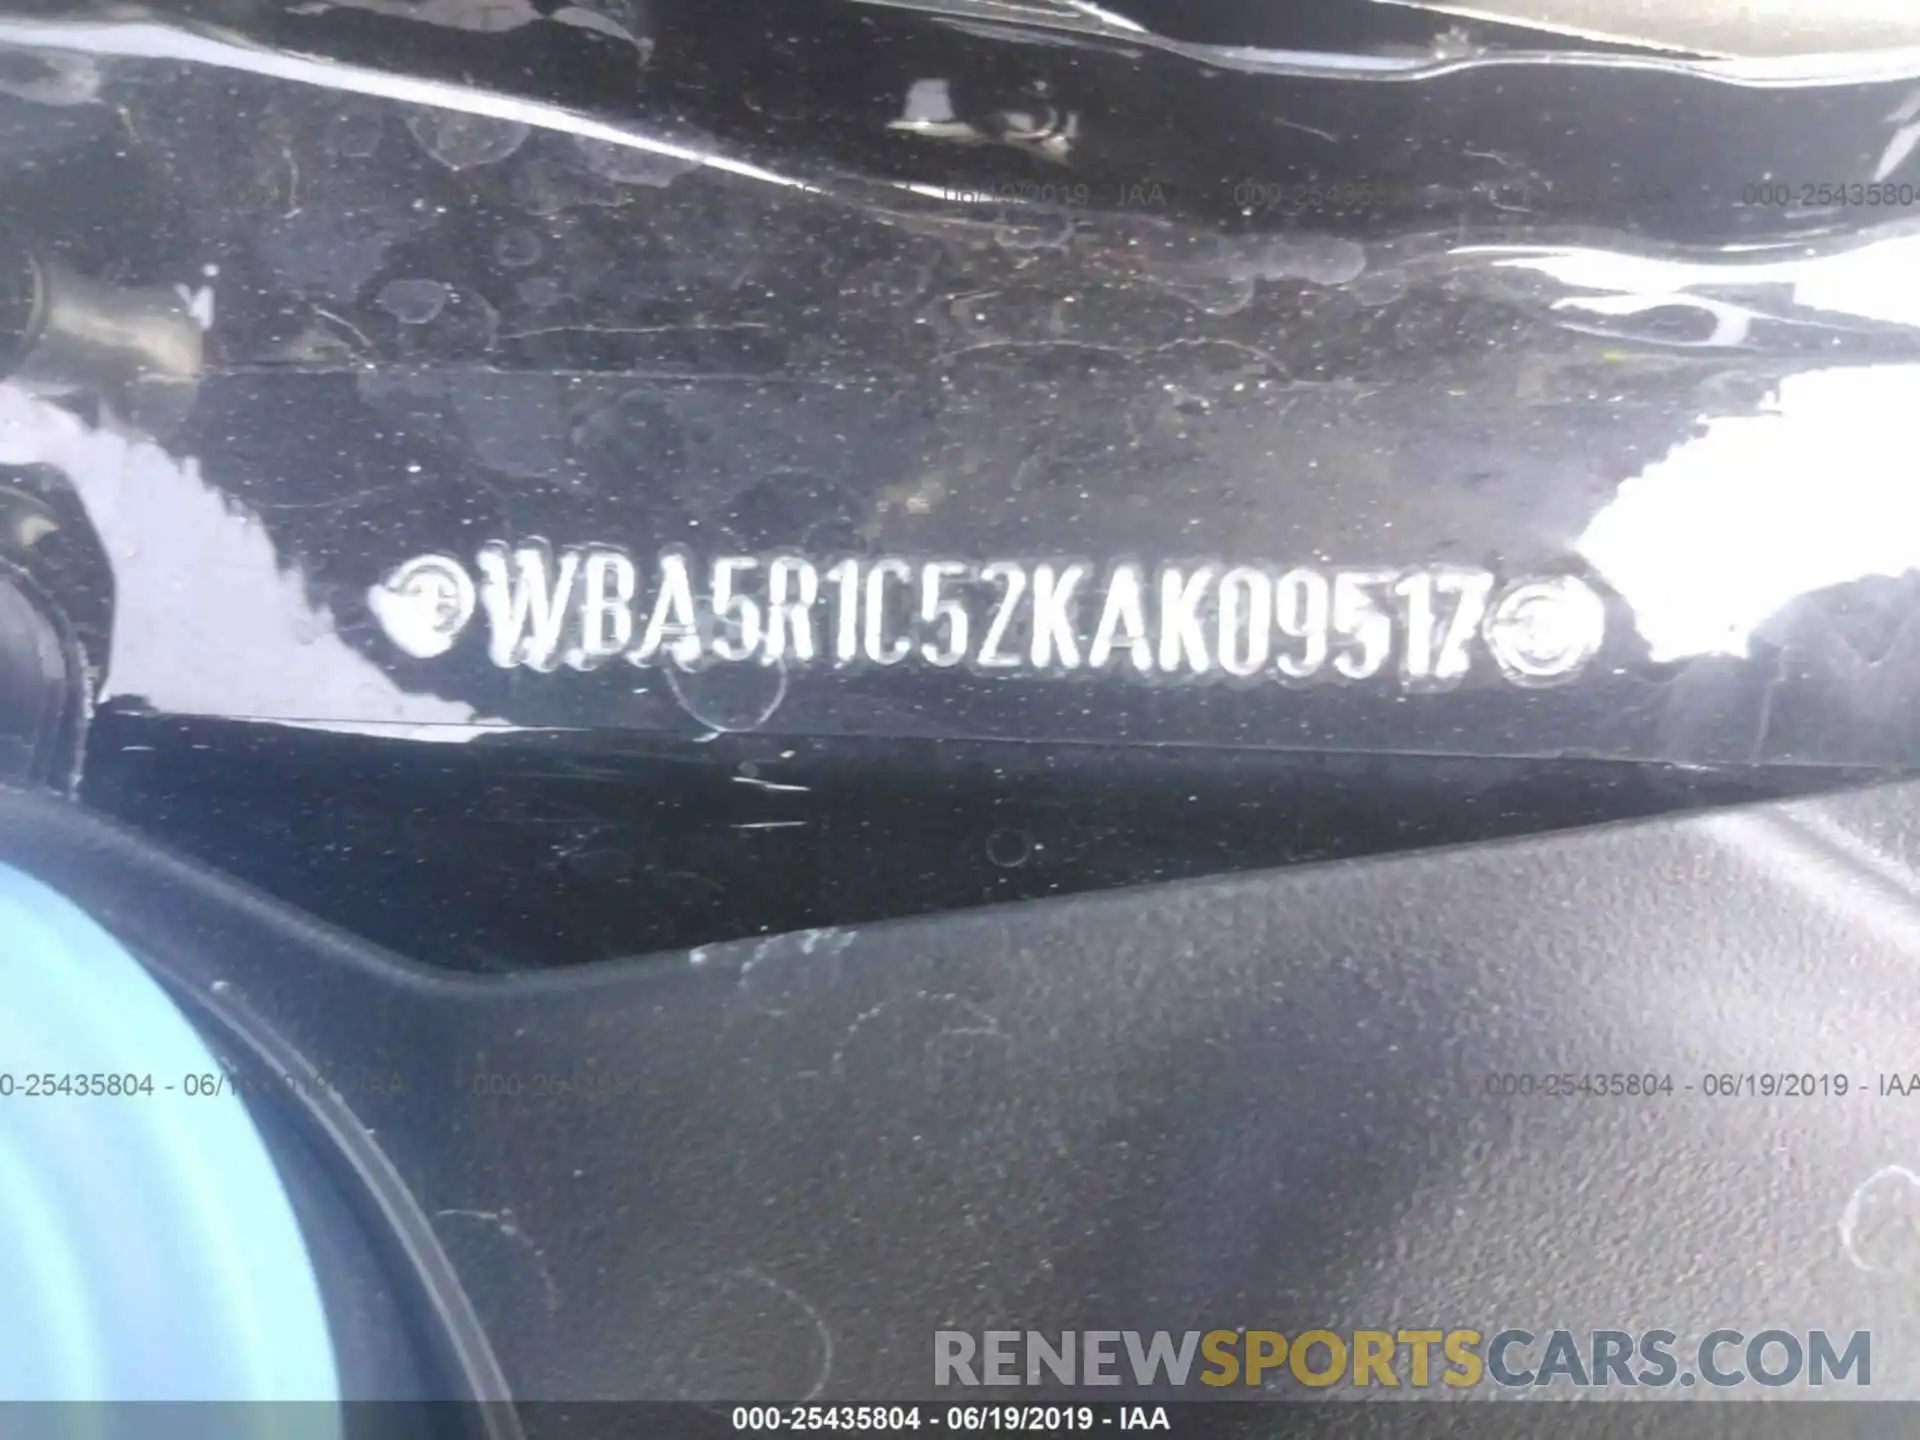 9 Photograph of a damaged car WBA5R1C52KAK09517 BMW 330I 2019